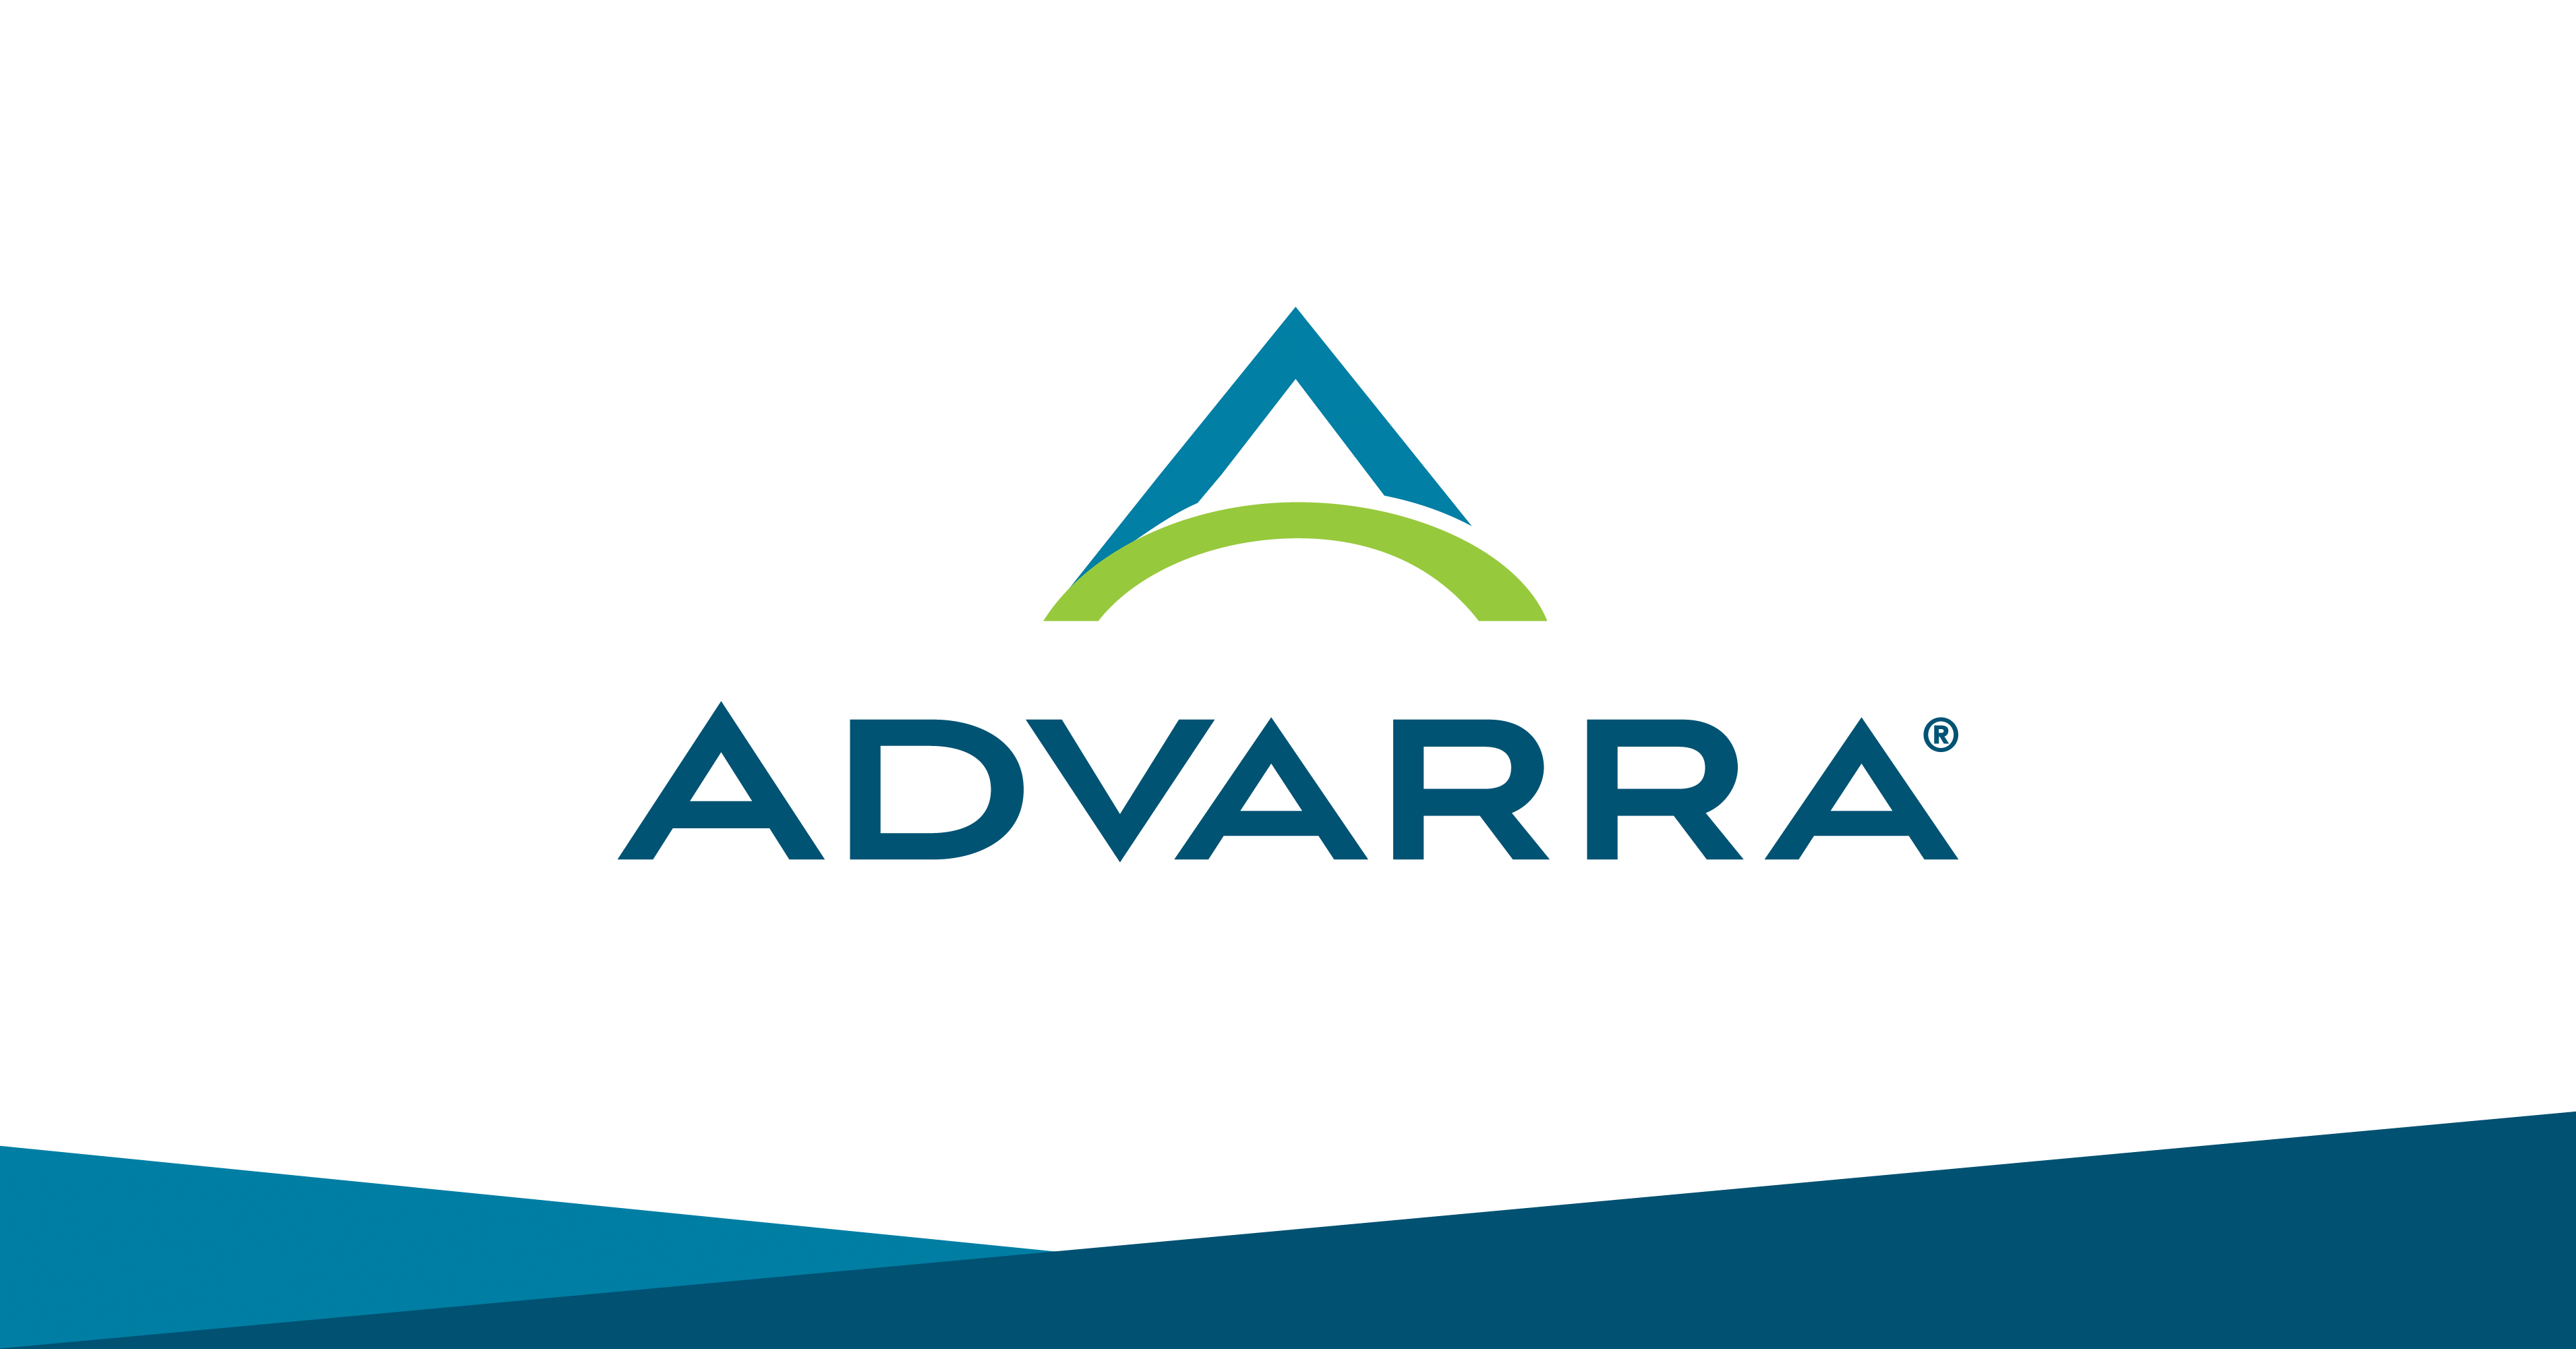 www.advarra.com